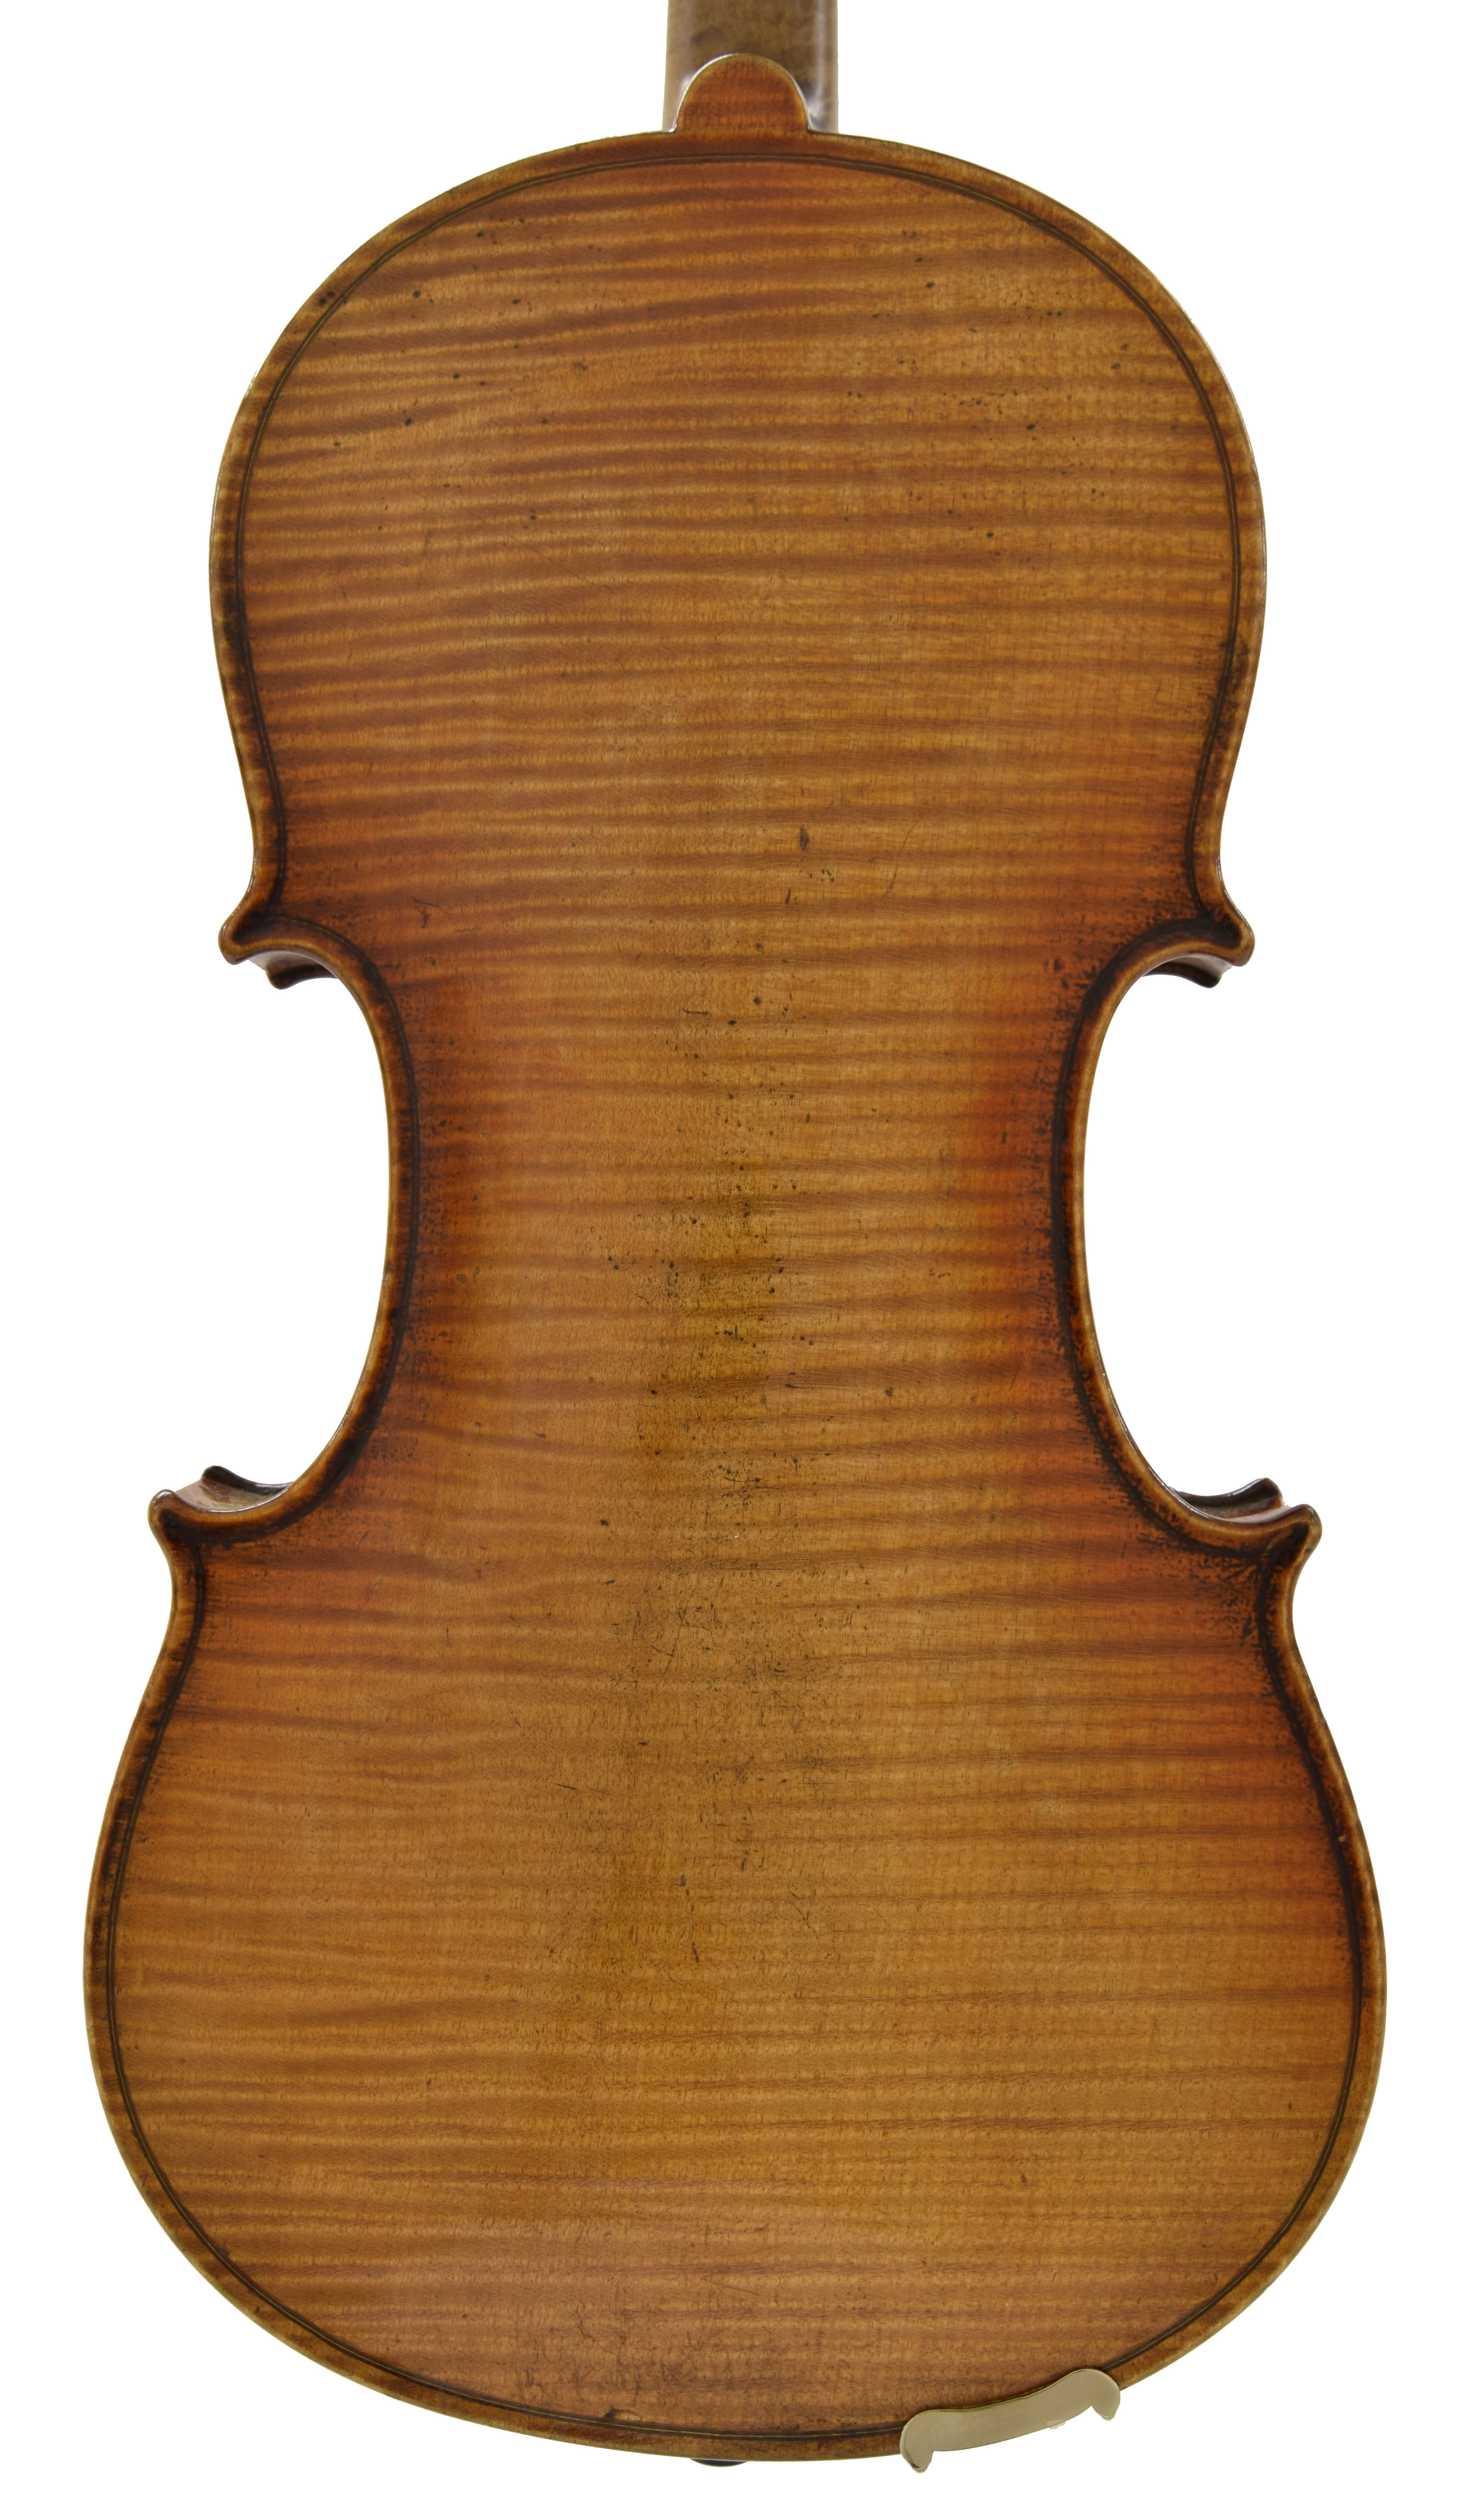 German violin by and labelled Atelier Fur Kunstlerischen, Geigenbau, Alban Voigt & Co. Sachsen & - Image 2 of 3